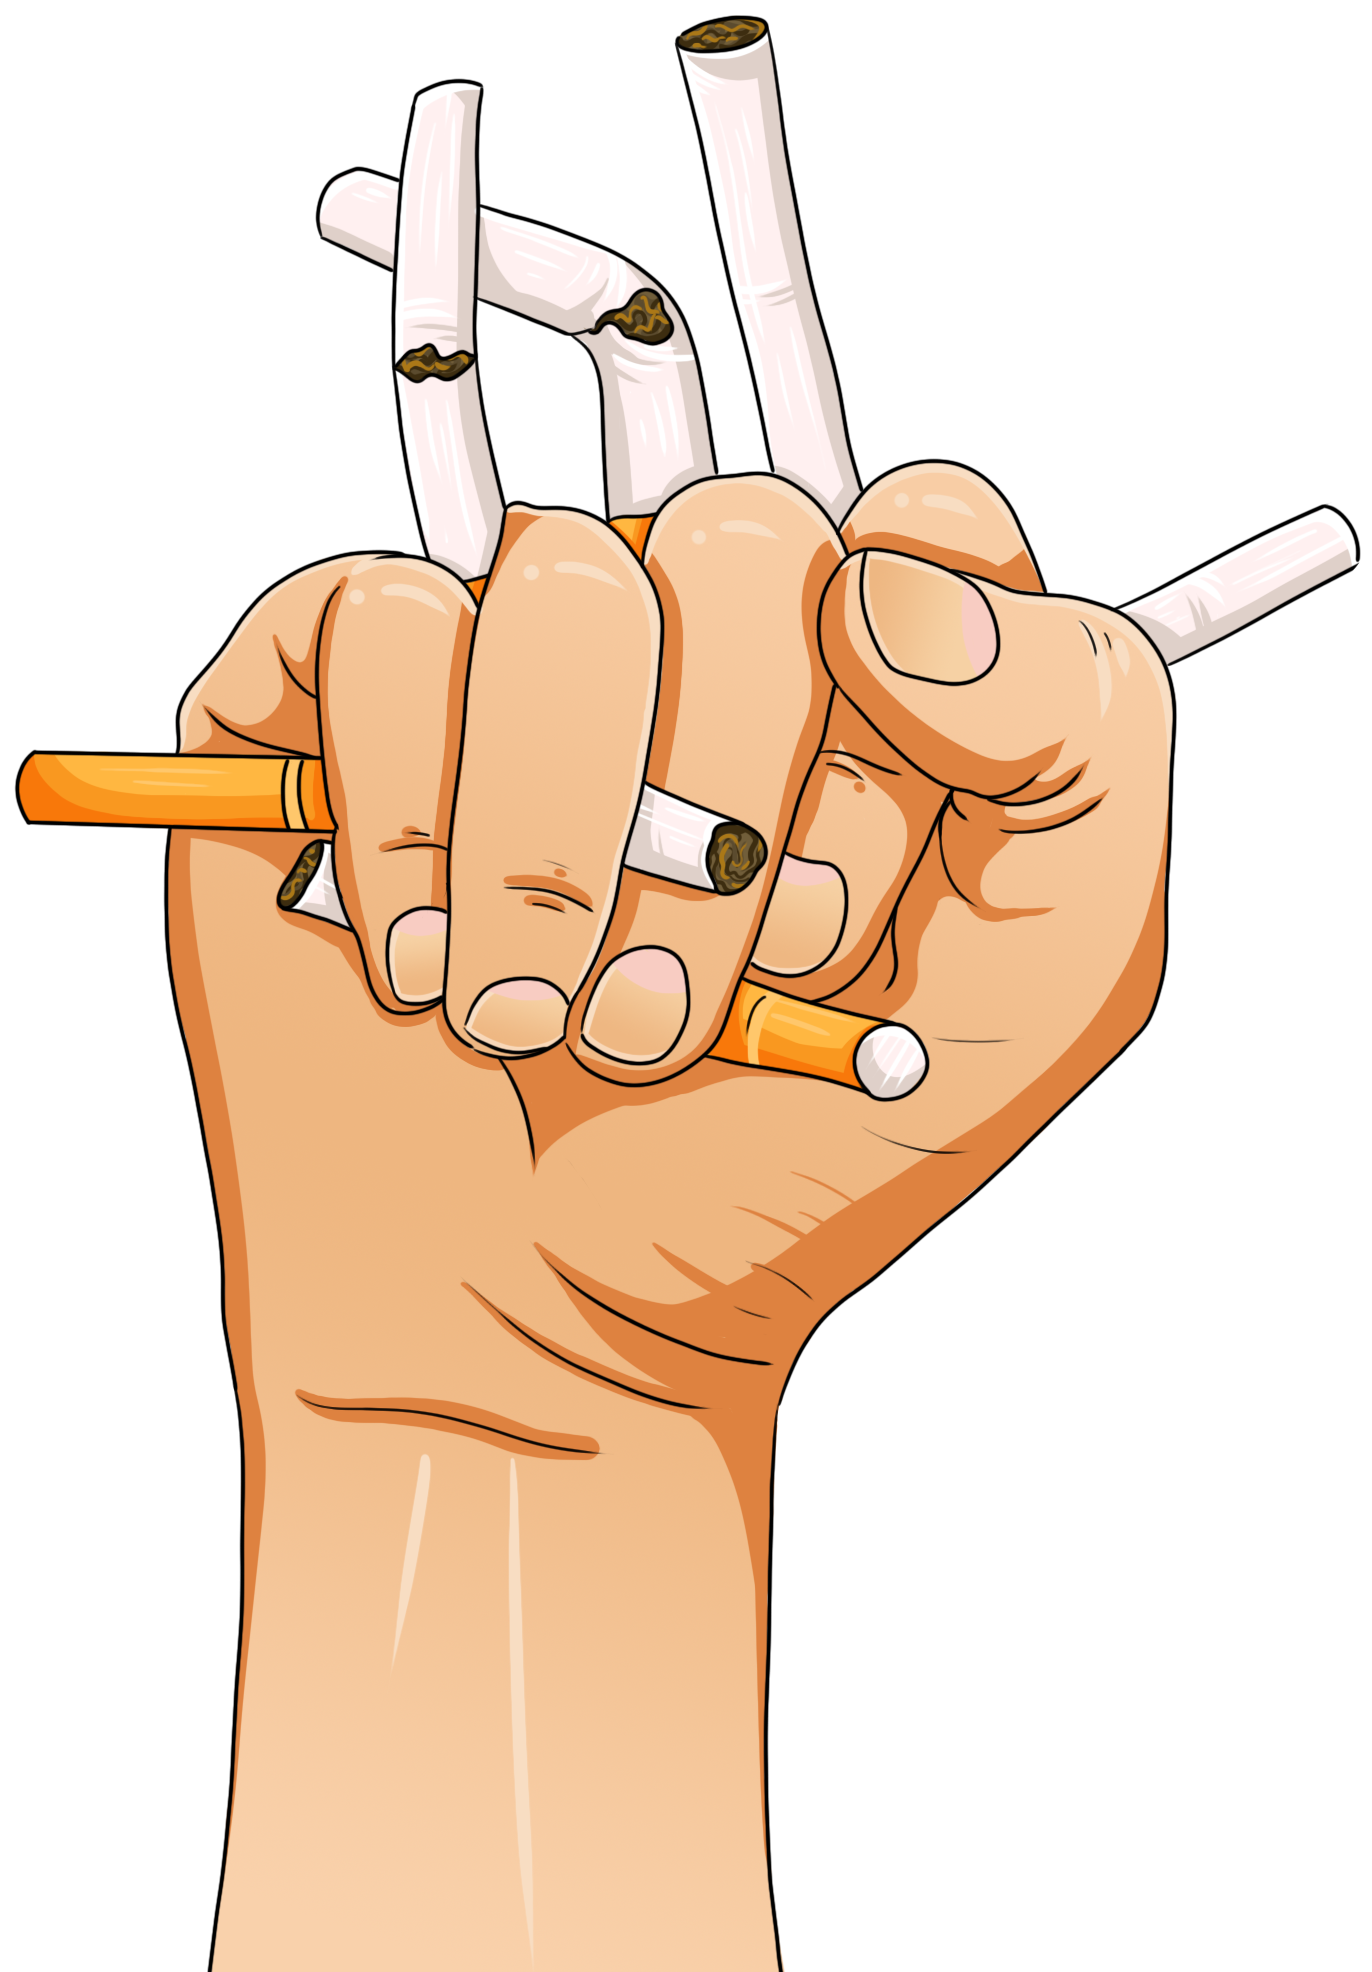 卡通冒烟烟斗图片素材免费下载 - 觅知网